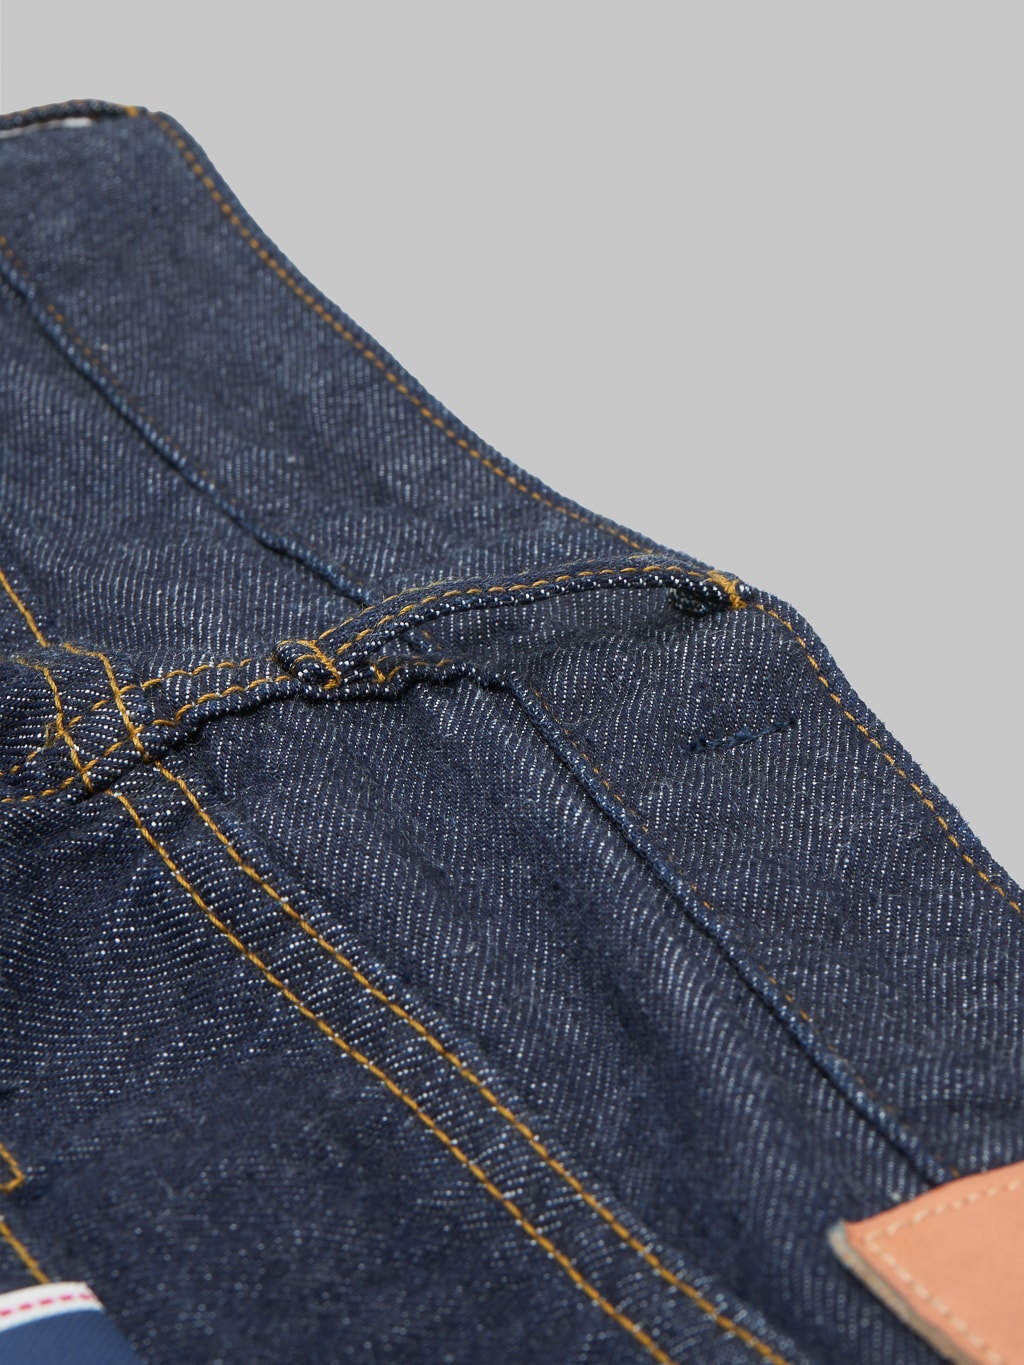 Japan Blue J508 lightweight selvedge denim loose Jeans belt loop